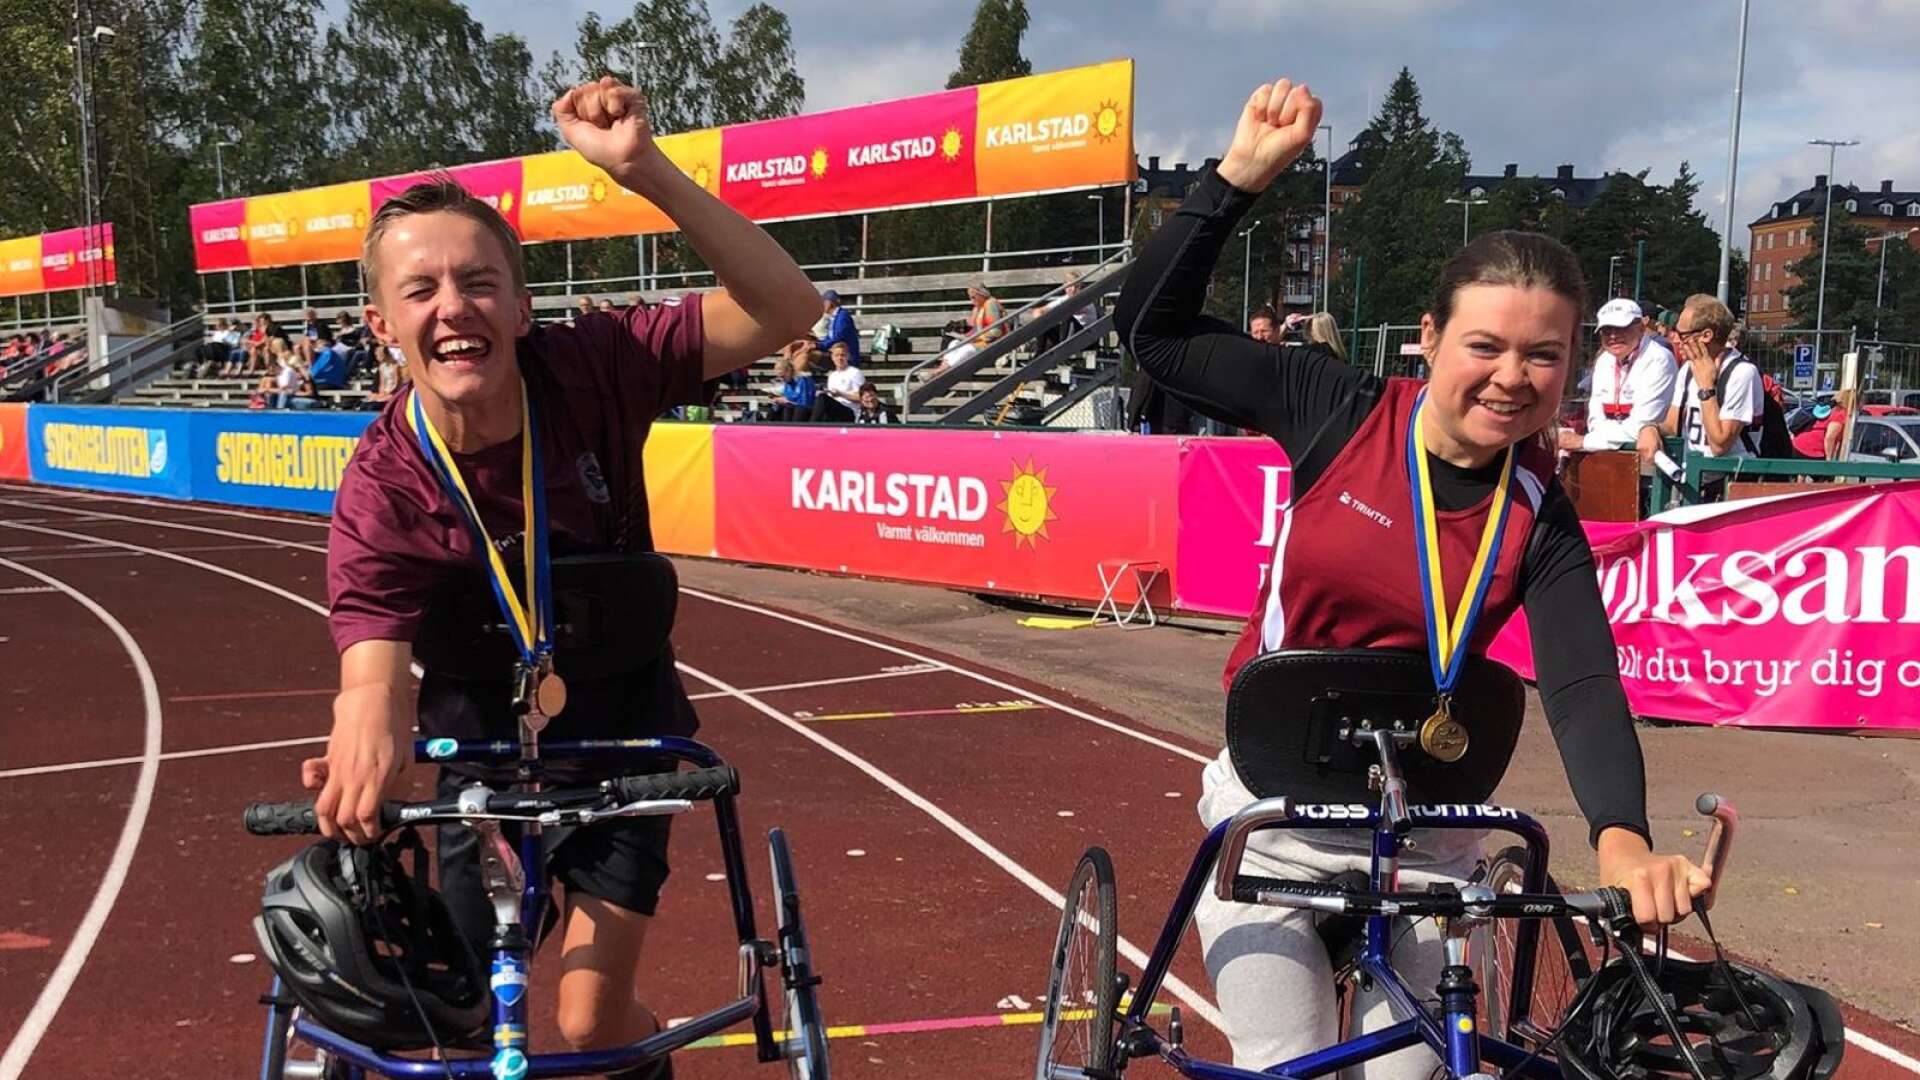 Gustav Tegnelund och Marika Vaihinger hade en lyckosam tävlingsdag på Tingvalla i Karlstad.